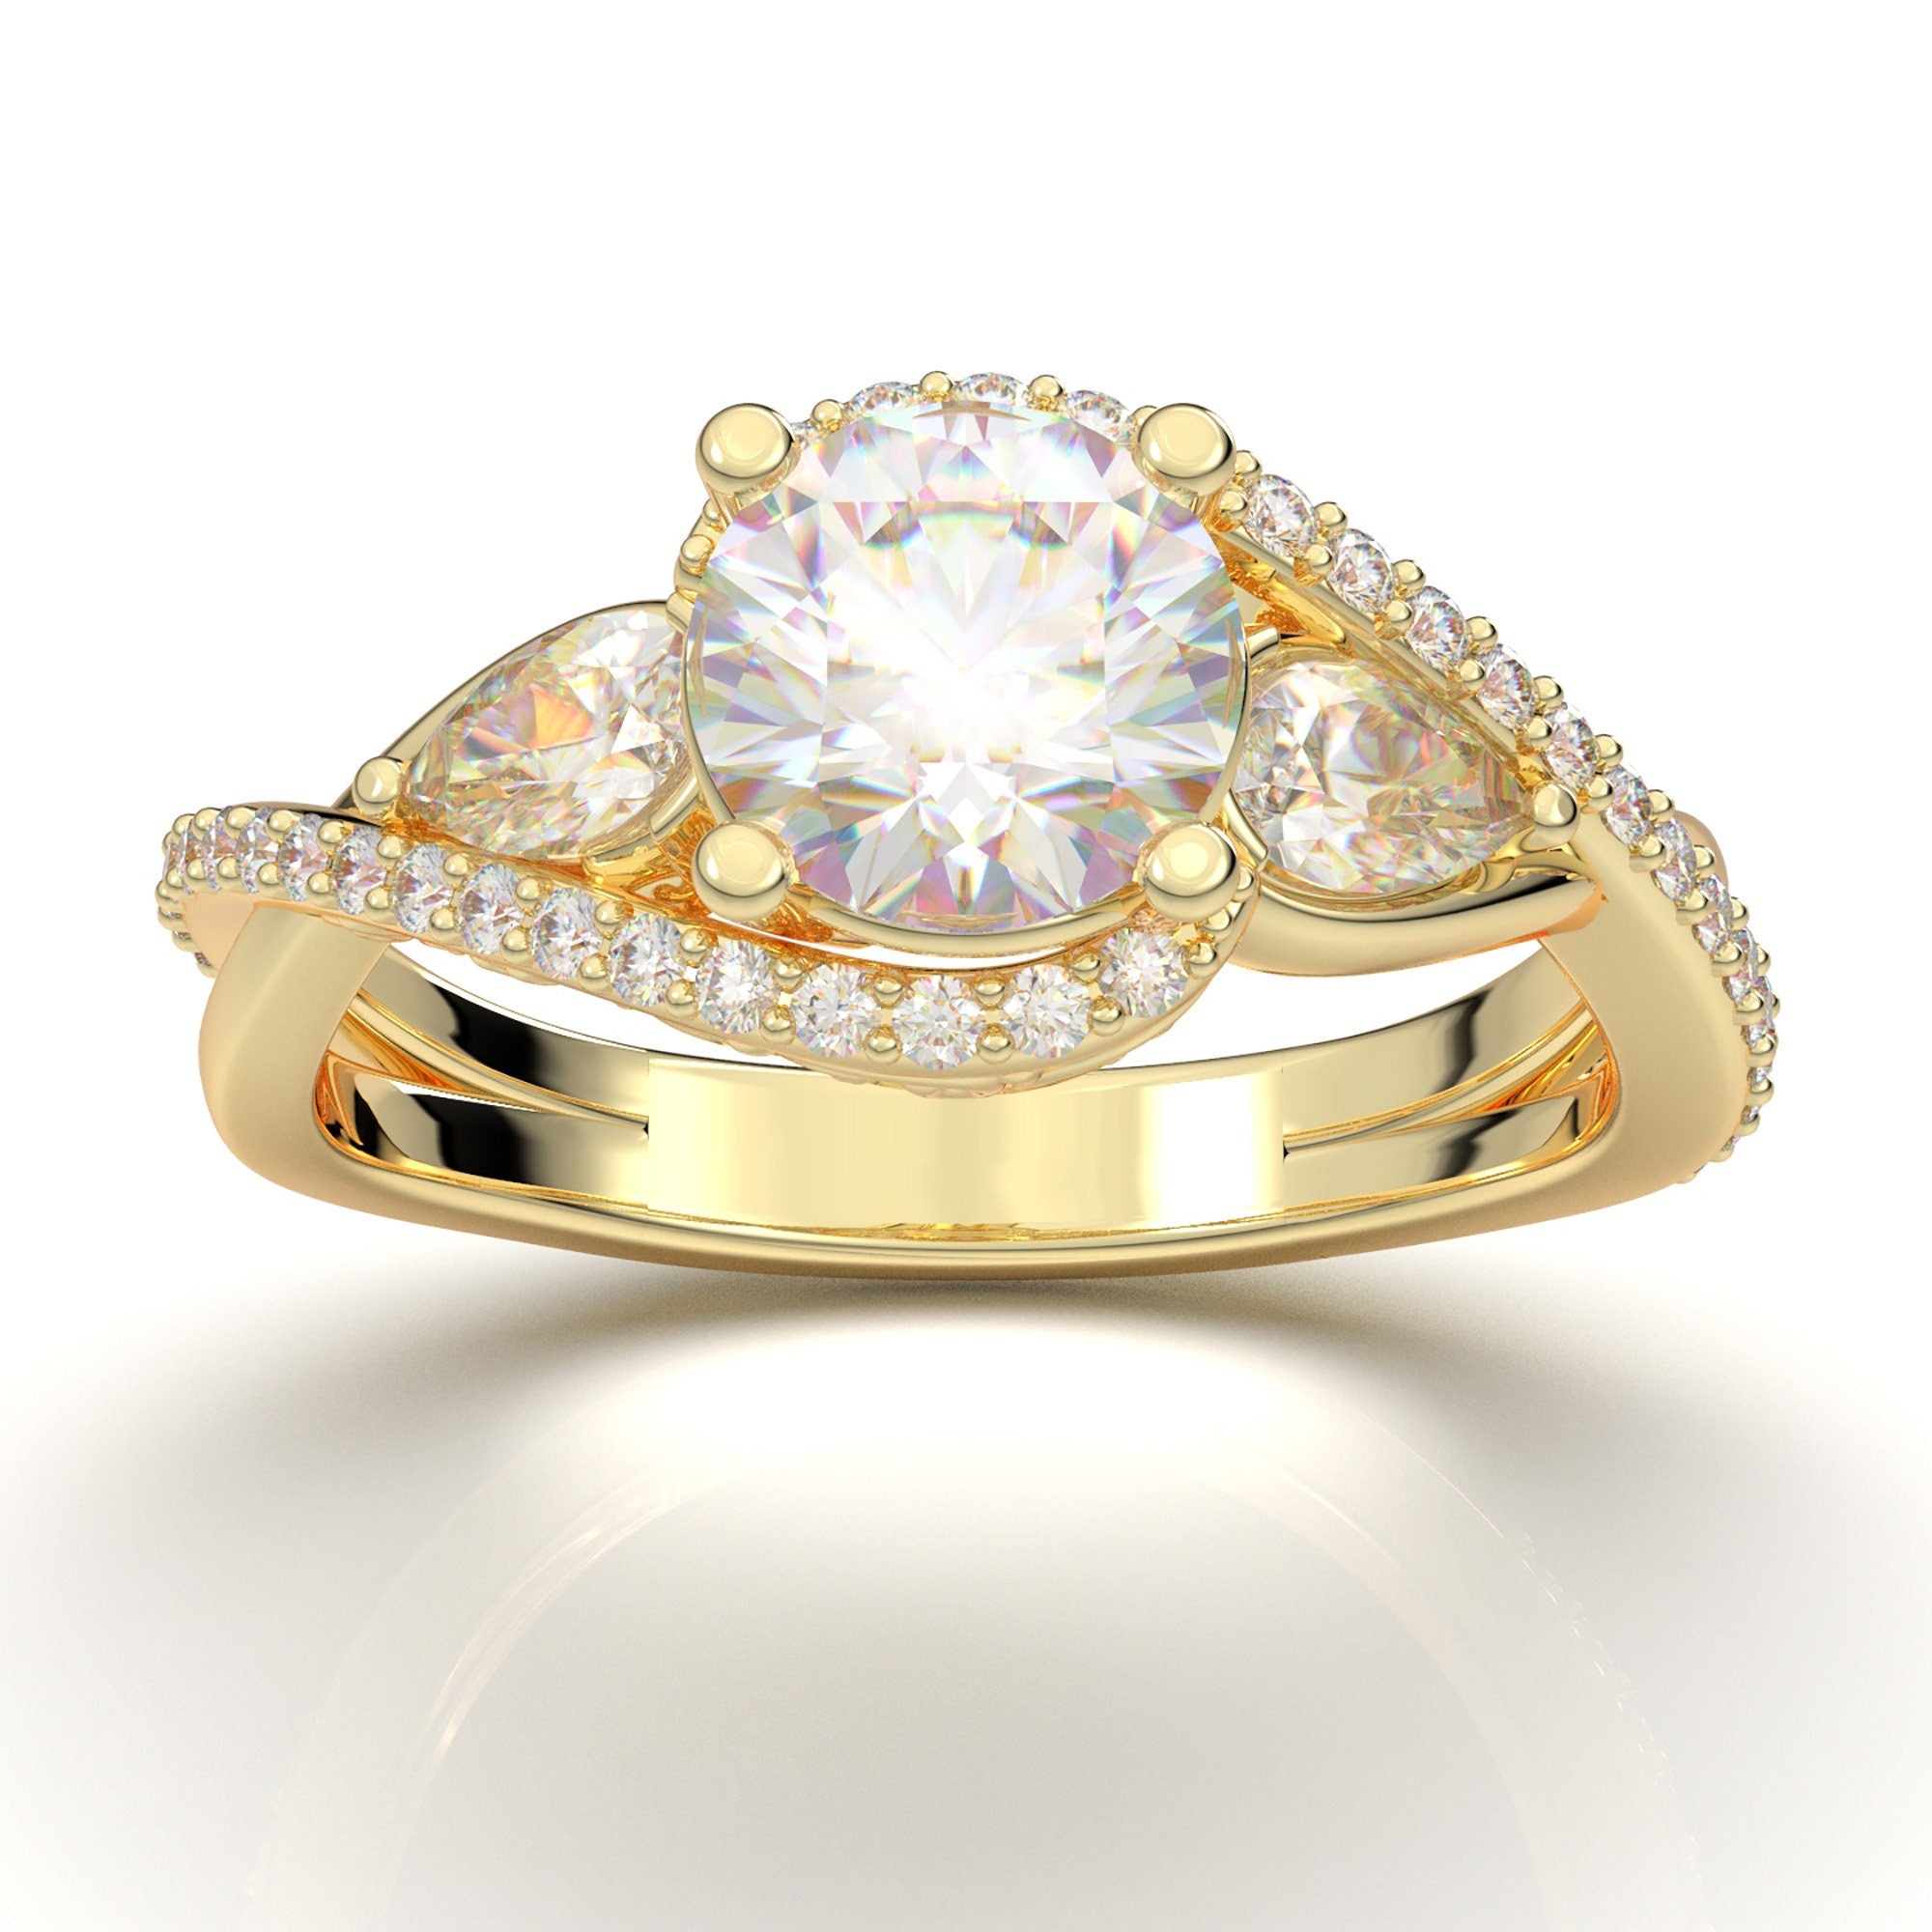 Diamond Women Wedding Ring Online | Latest Diamond Rings Design for Female